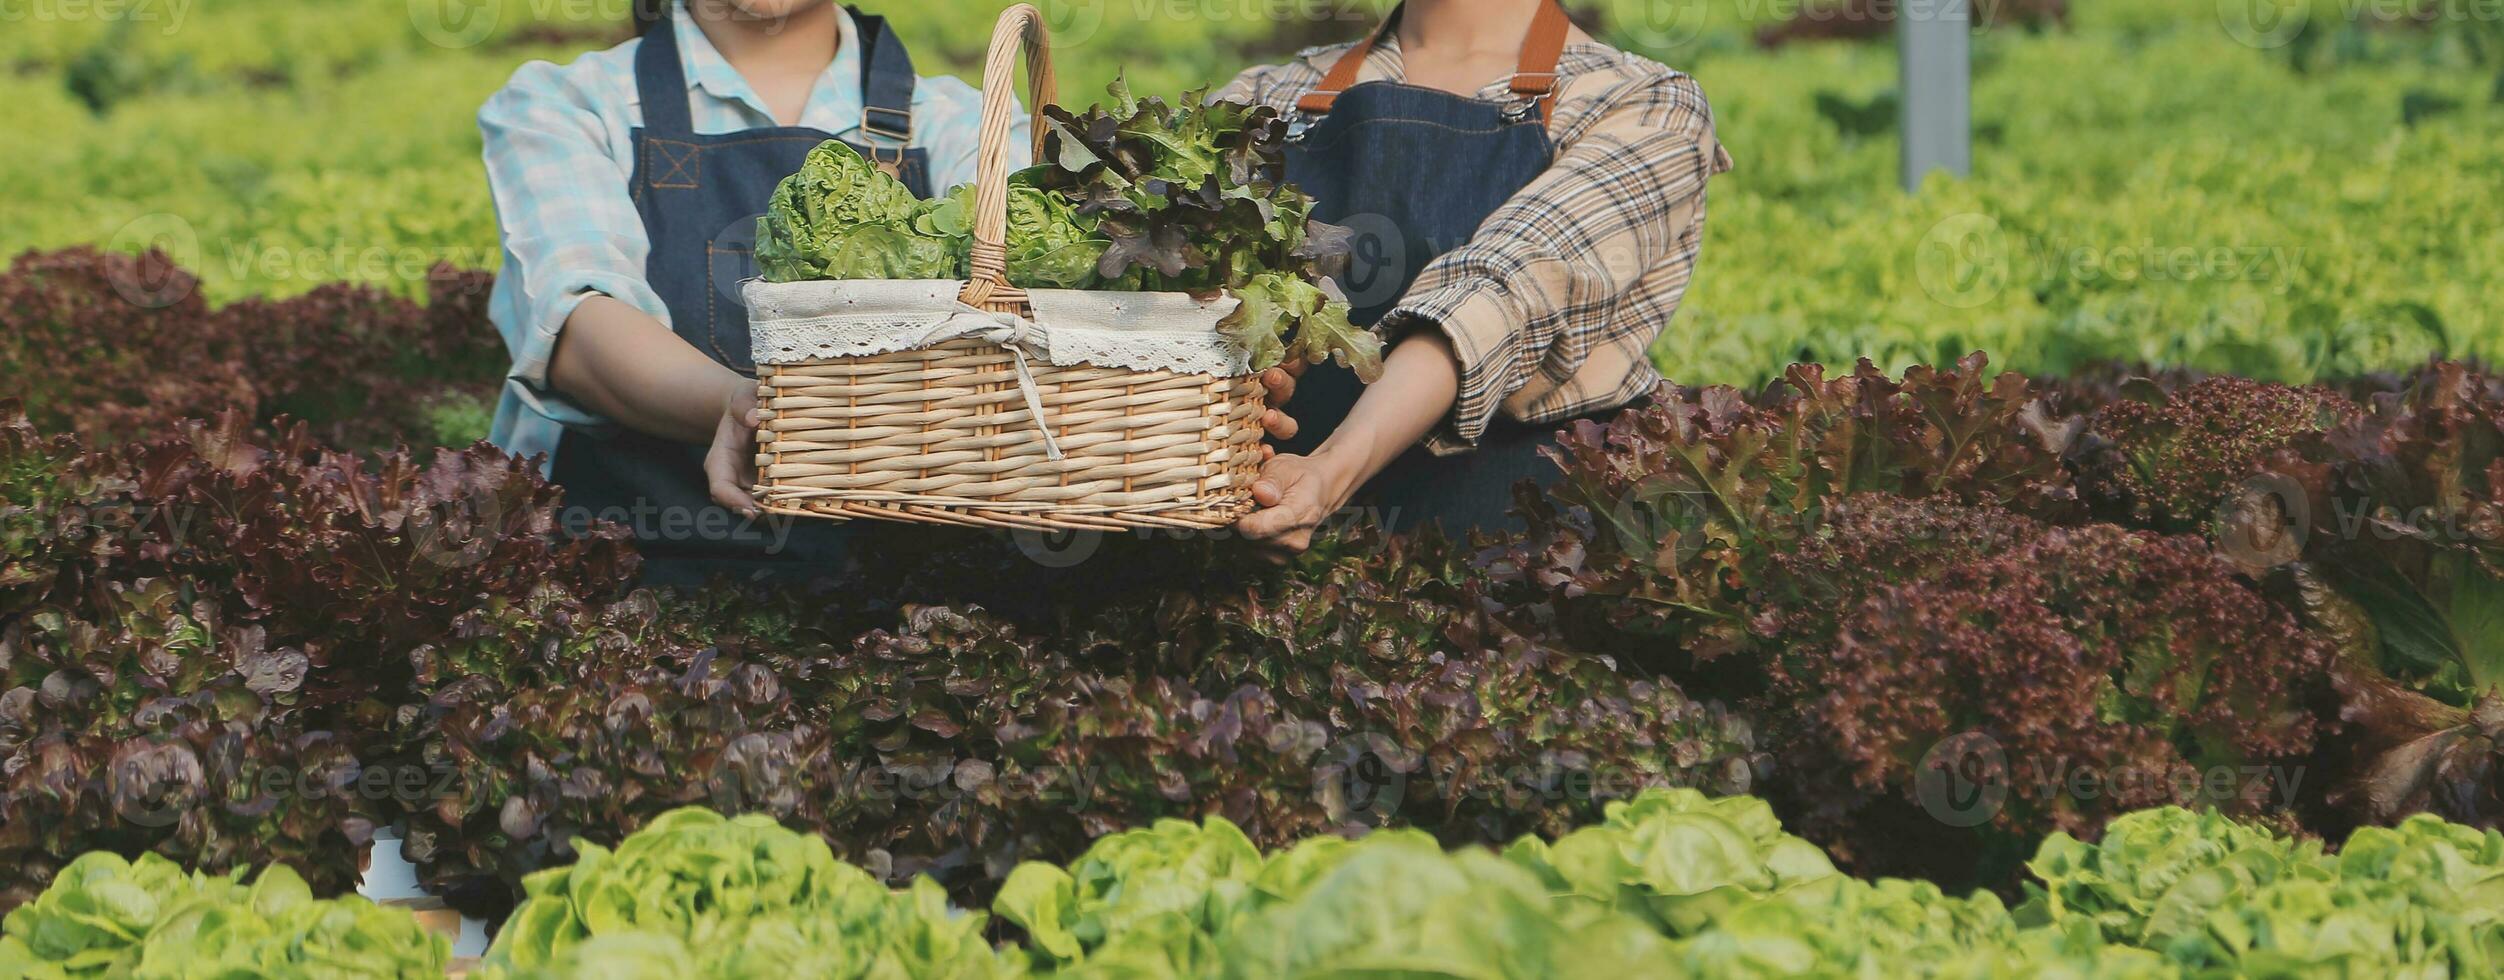 Frau Gärtner inspiziert Qualität von Grün Eiche Grüner Salat im Gewächshaus Gartenarbeit. weiblich asiatisch Gartenbau Farmer pflegen gesund Ernährung organisch Salat Gemüse im hydroponisch Landwirtschaft Bauernhof. foto